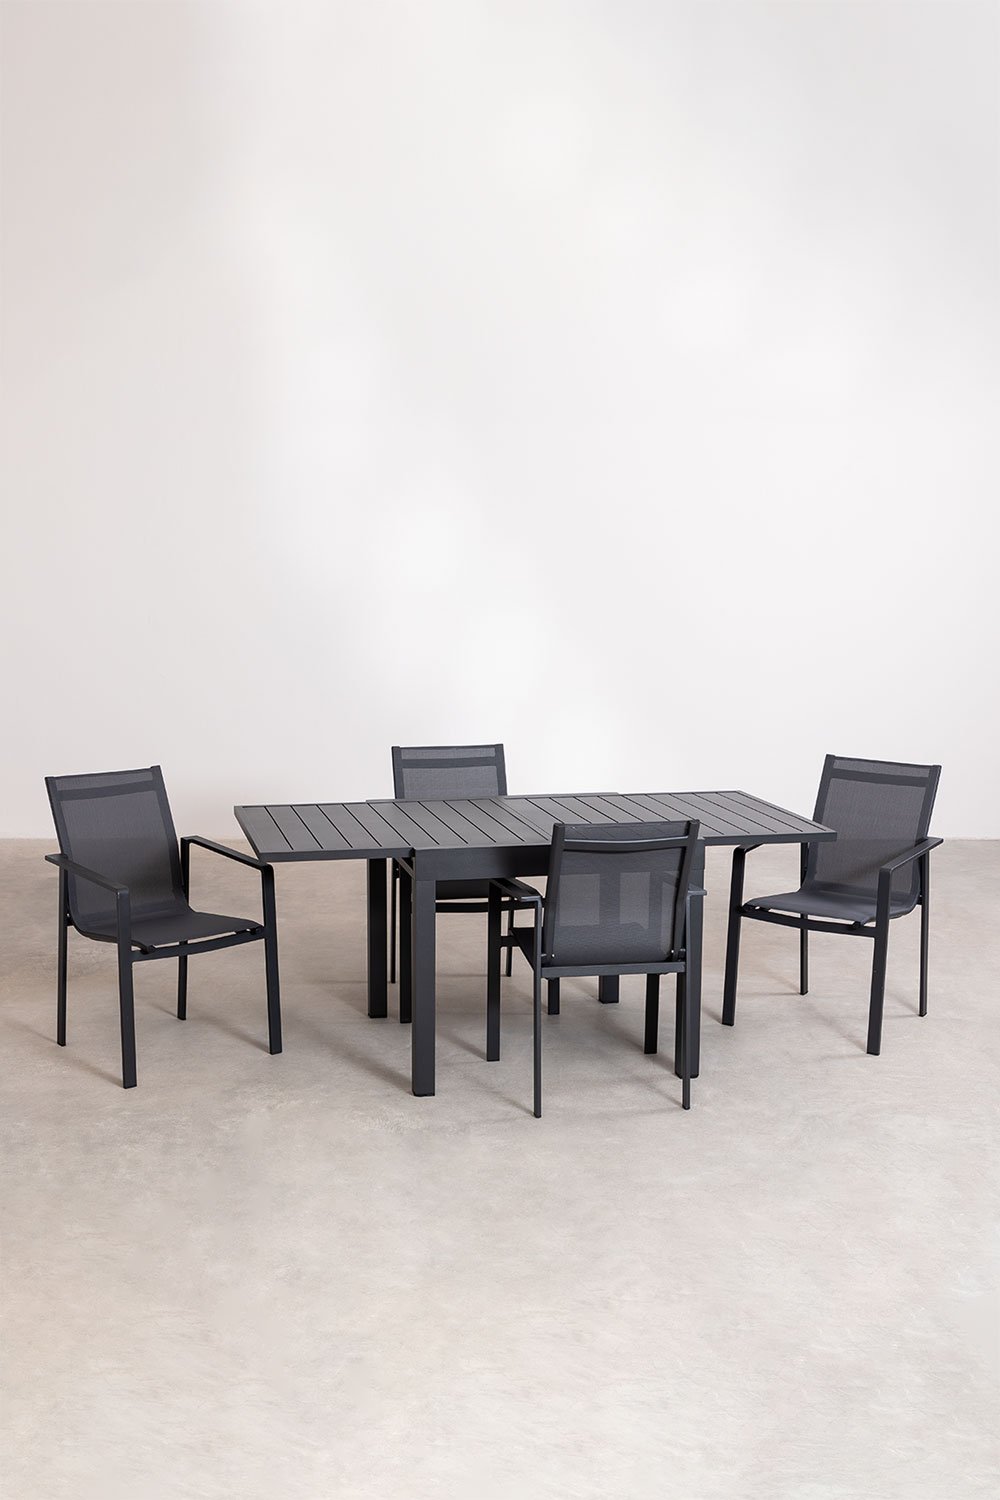 Aluminium rechthoekige uitschuifbare tafelset (90-180x90 cm) Starmi en 4 Eika buitenstoelen, galerij beeld 1